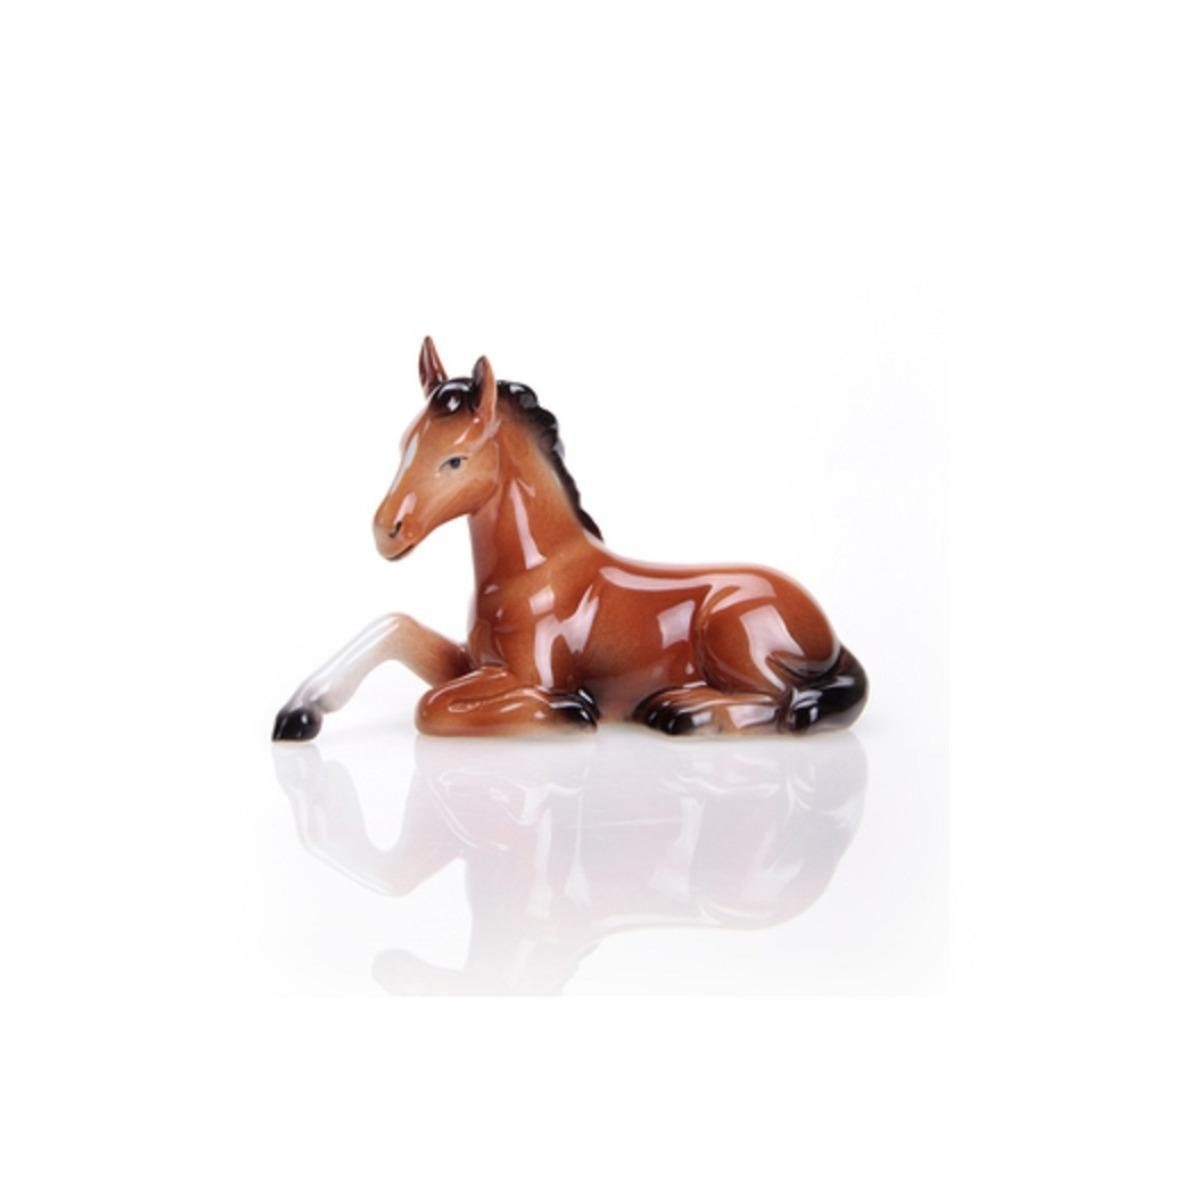 00705/40 - & Wagner Porzellan Apel Dekofigur Pferd